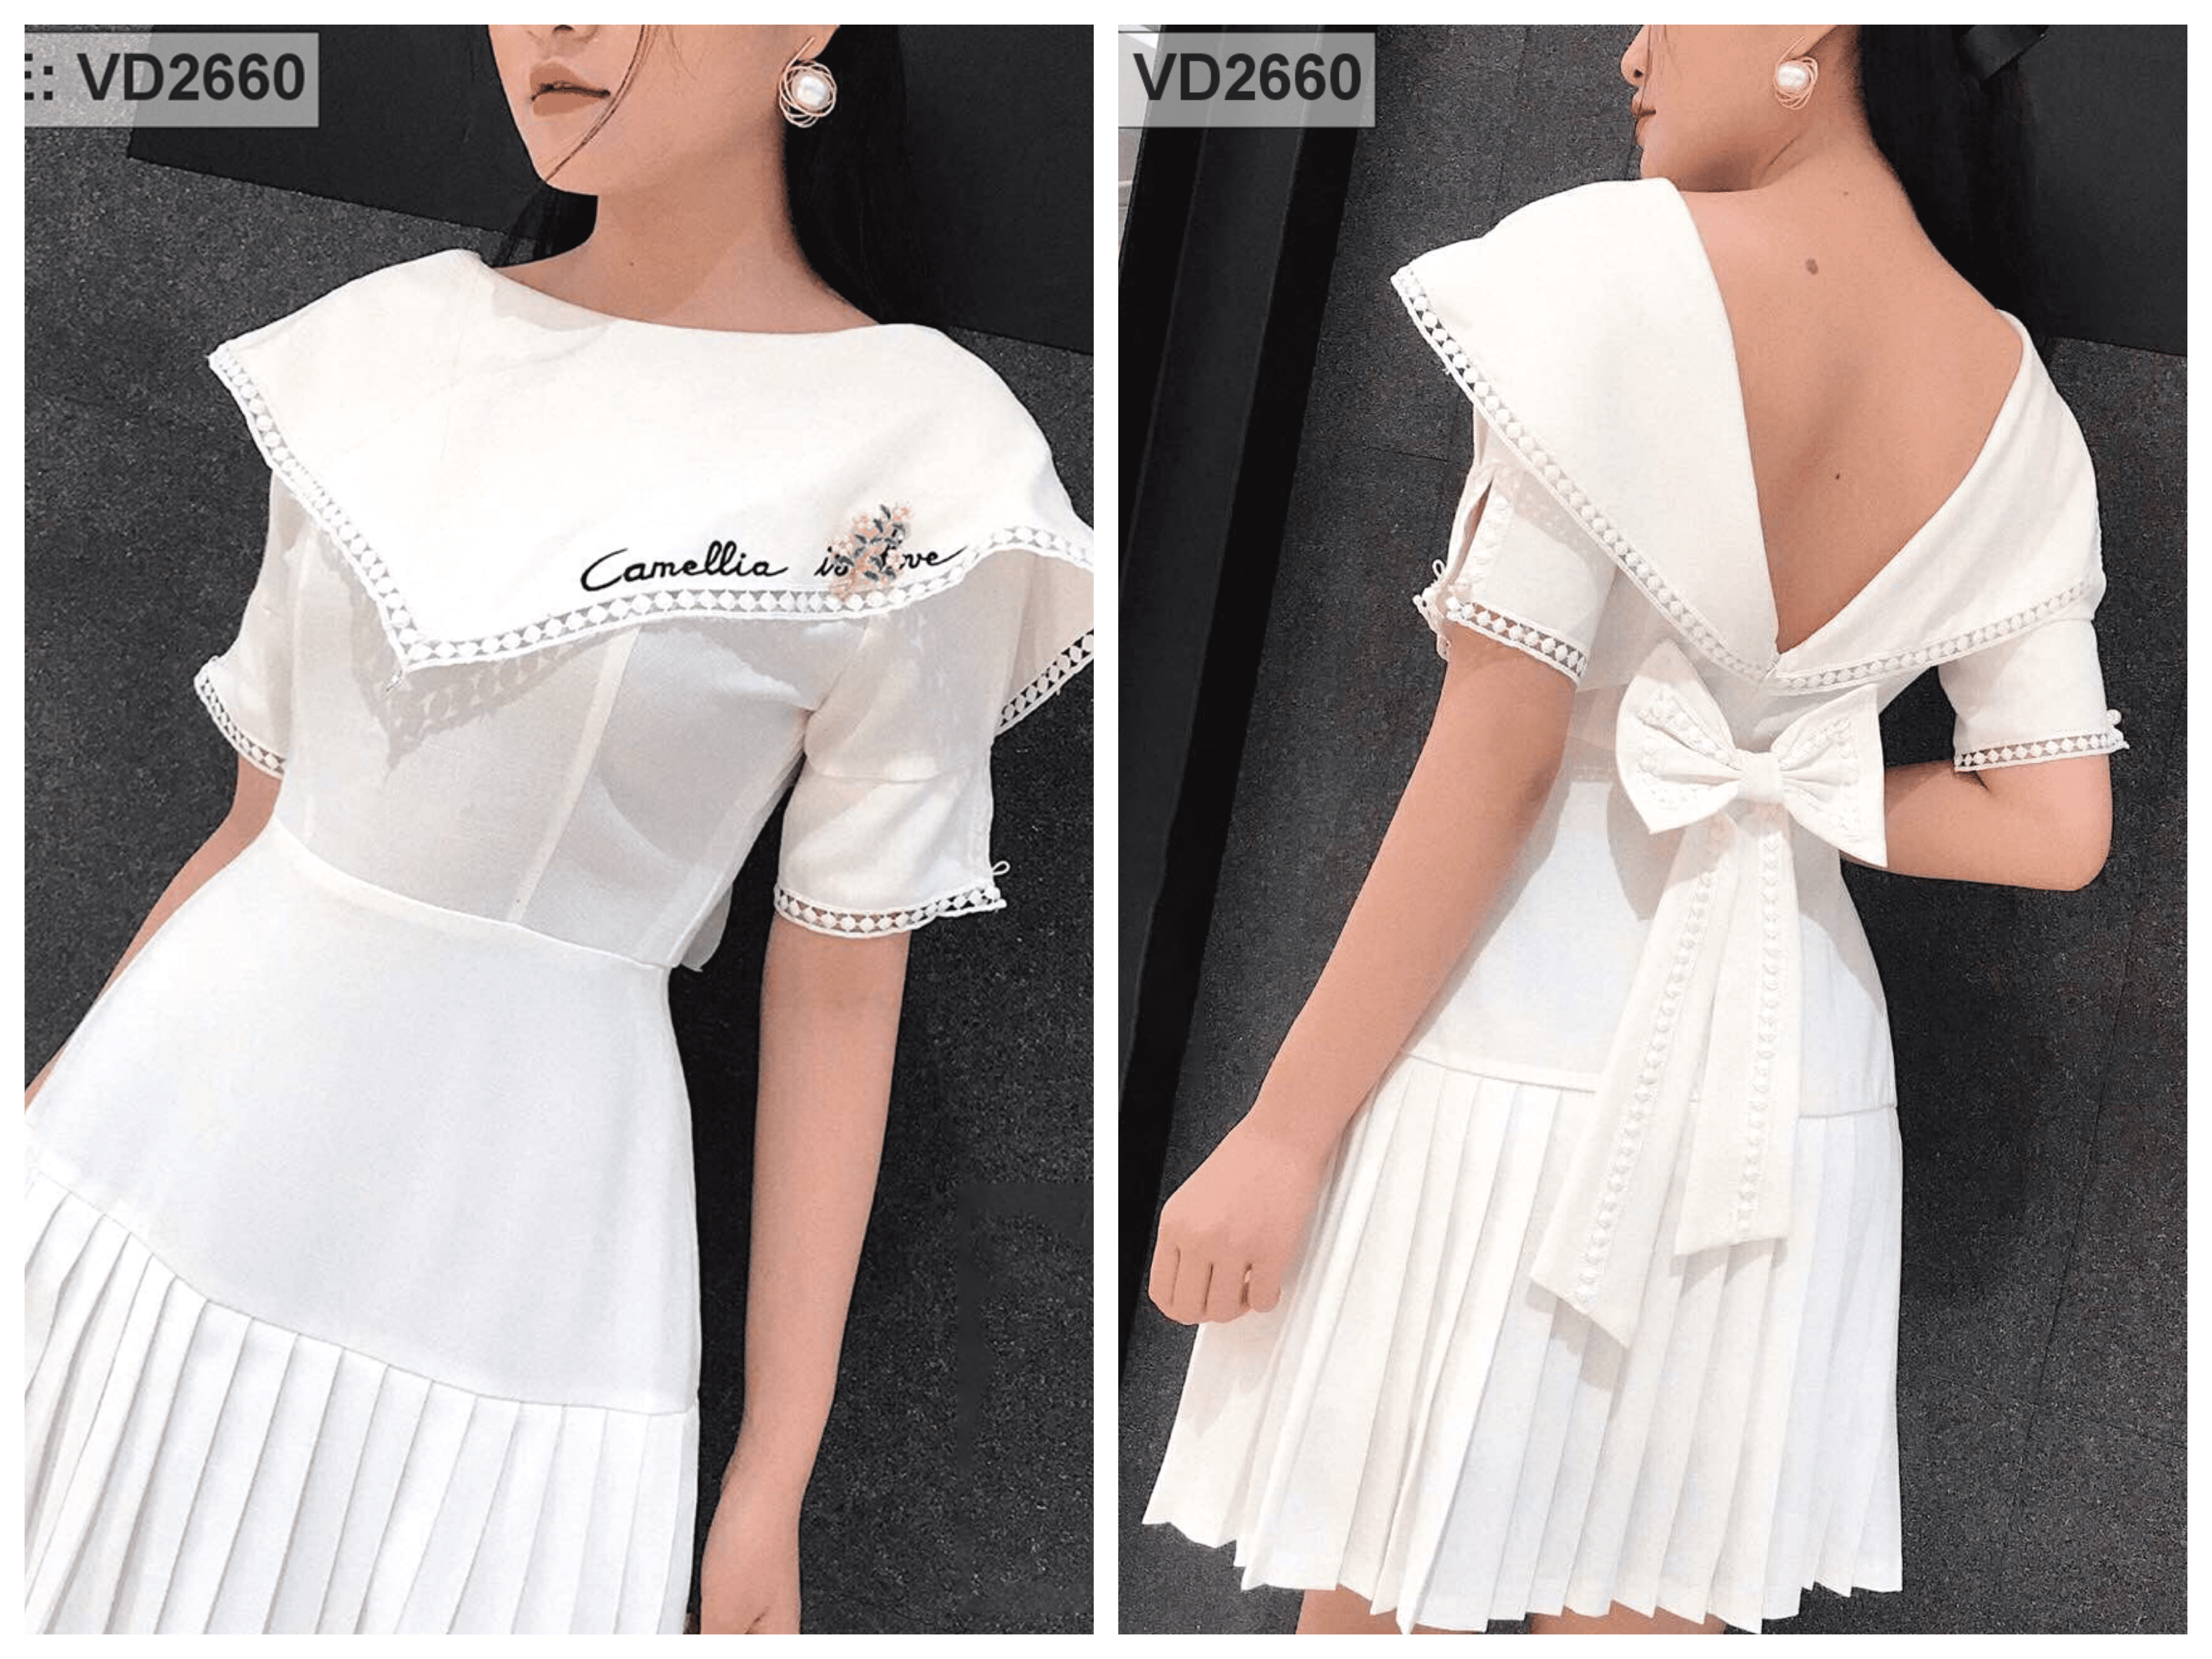 Đầm xòe trắng phối áo lệch vai đen - Bán sỉ thời trang mỹ phẩm